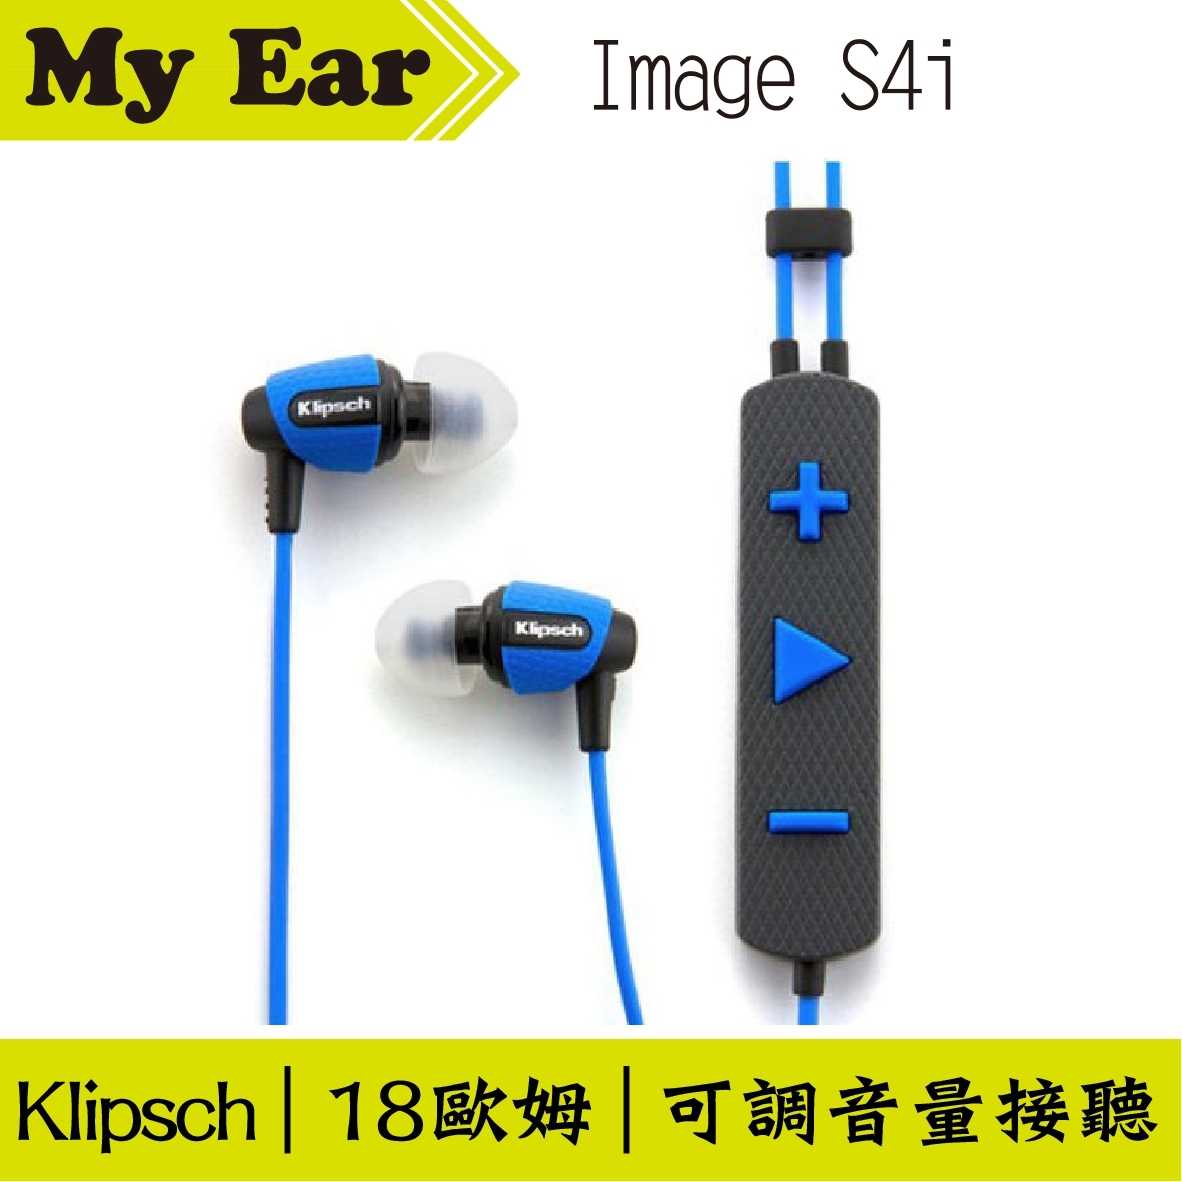 古力奇 Klipsch S4i Rugged 藍色 運動款 My Ear 台中耳機專賣店